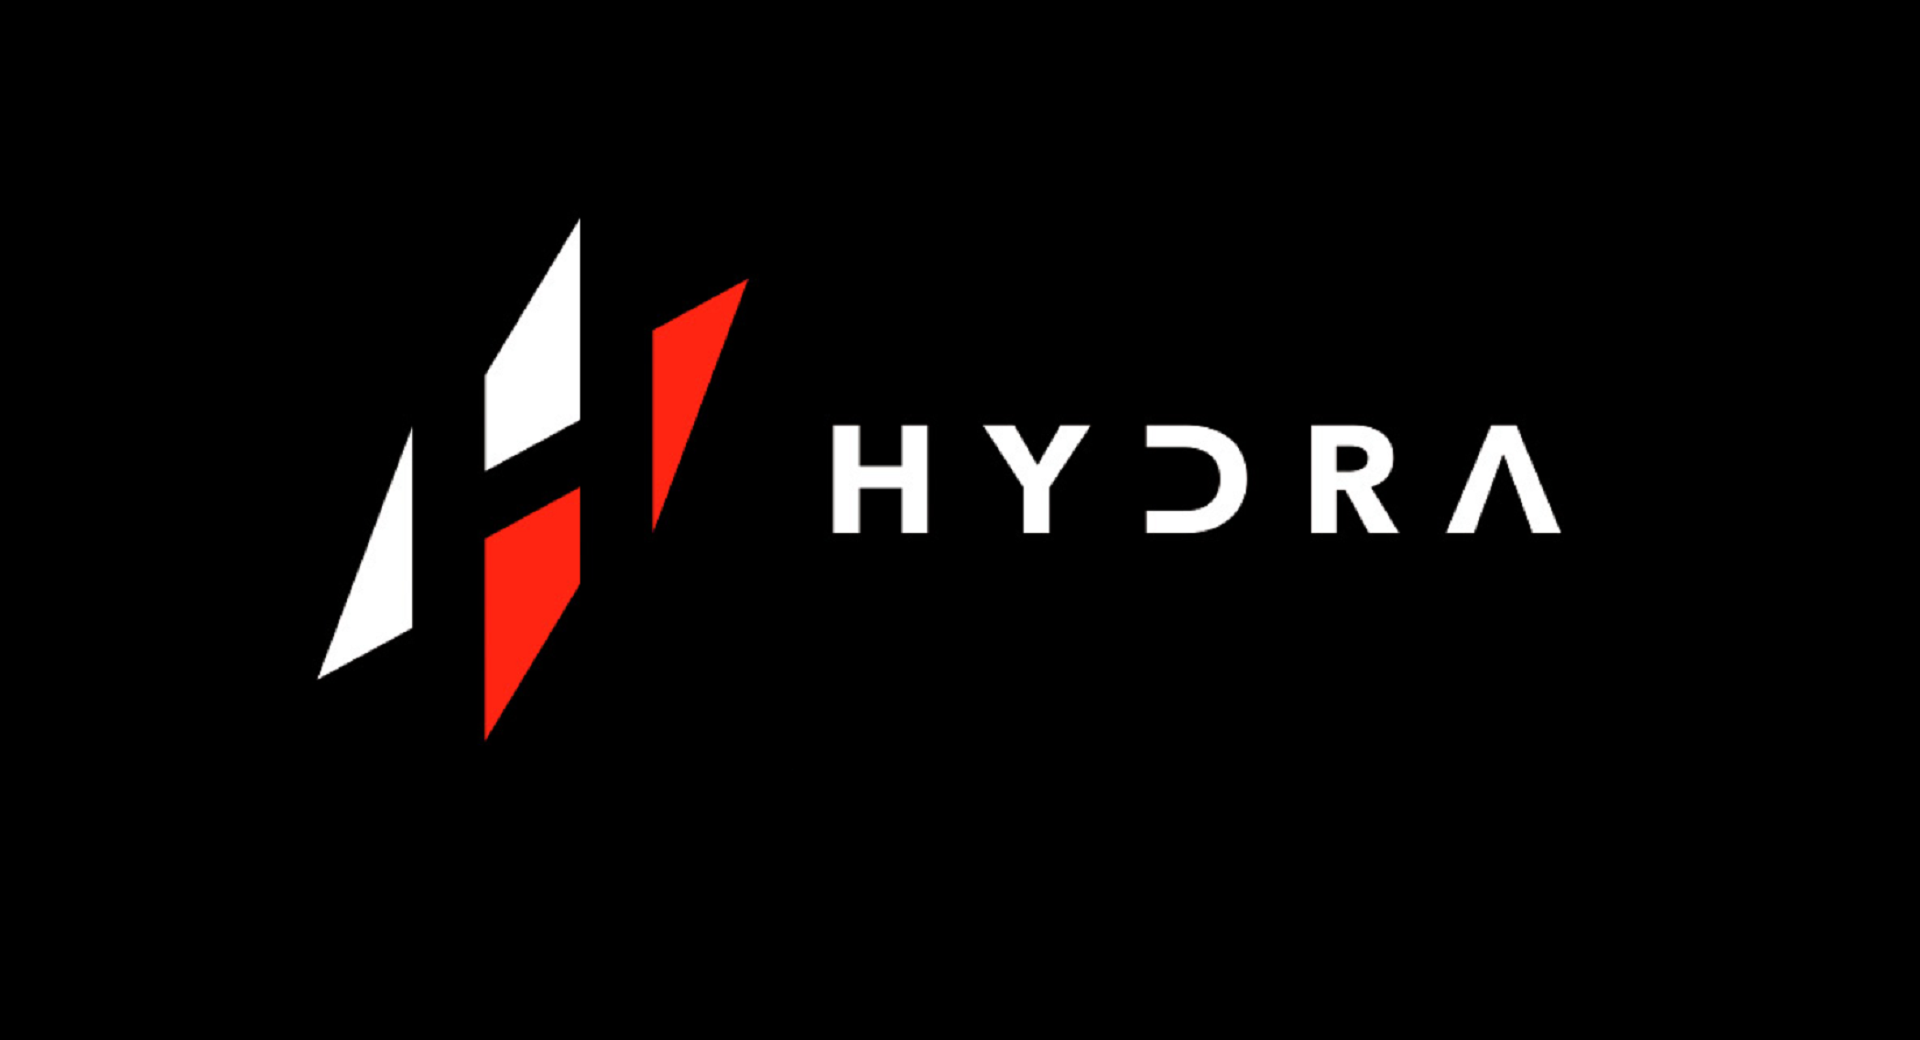 Некоторые букмекерские компании отказались открывать линии со ставками на матчи HYDRA